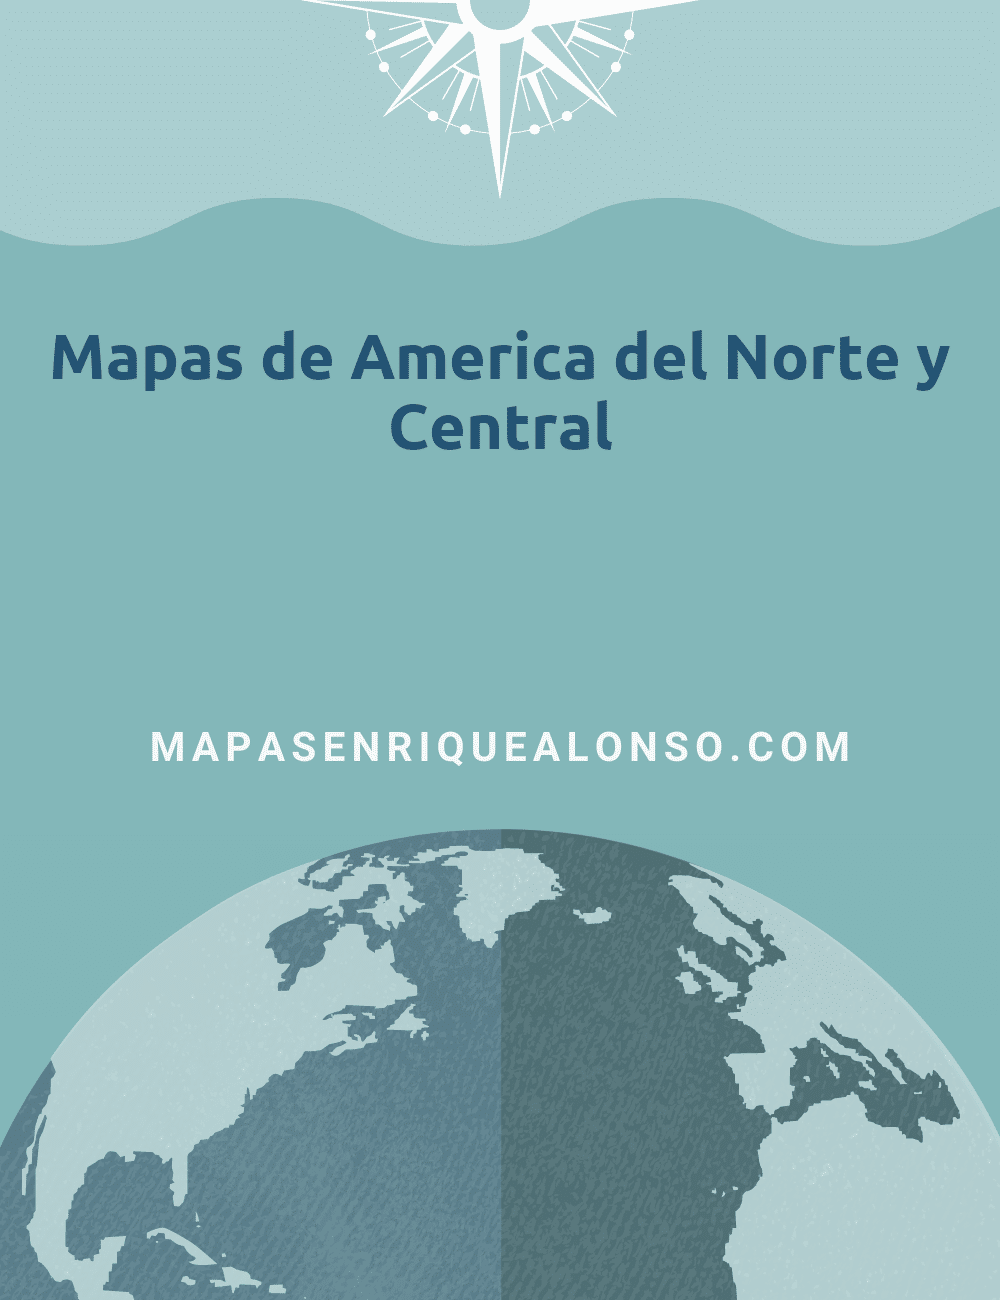 Mapas de America del Norte y Central